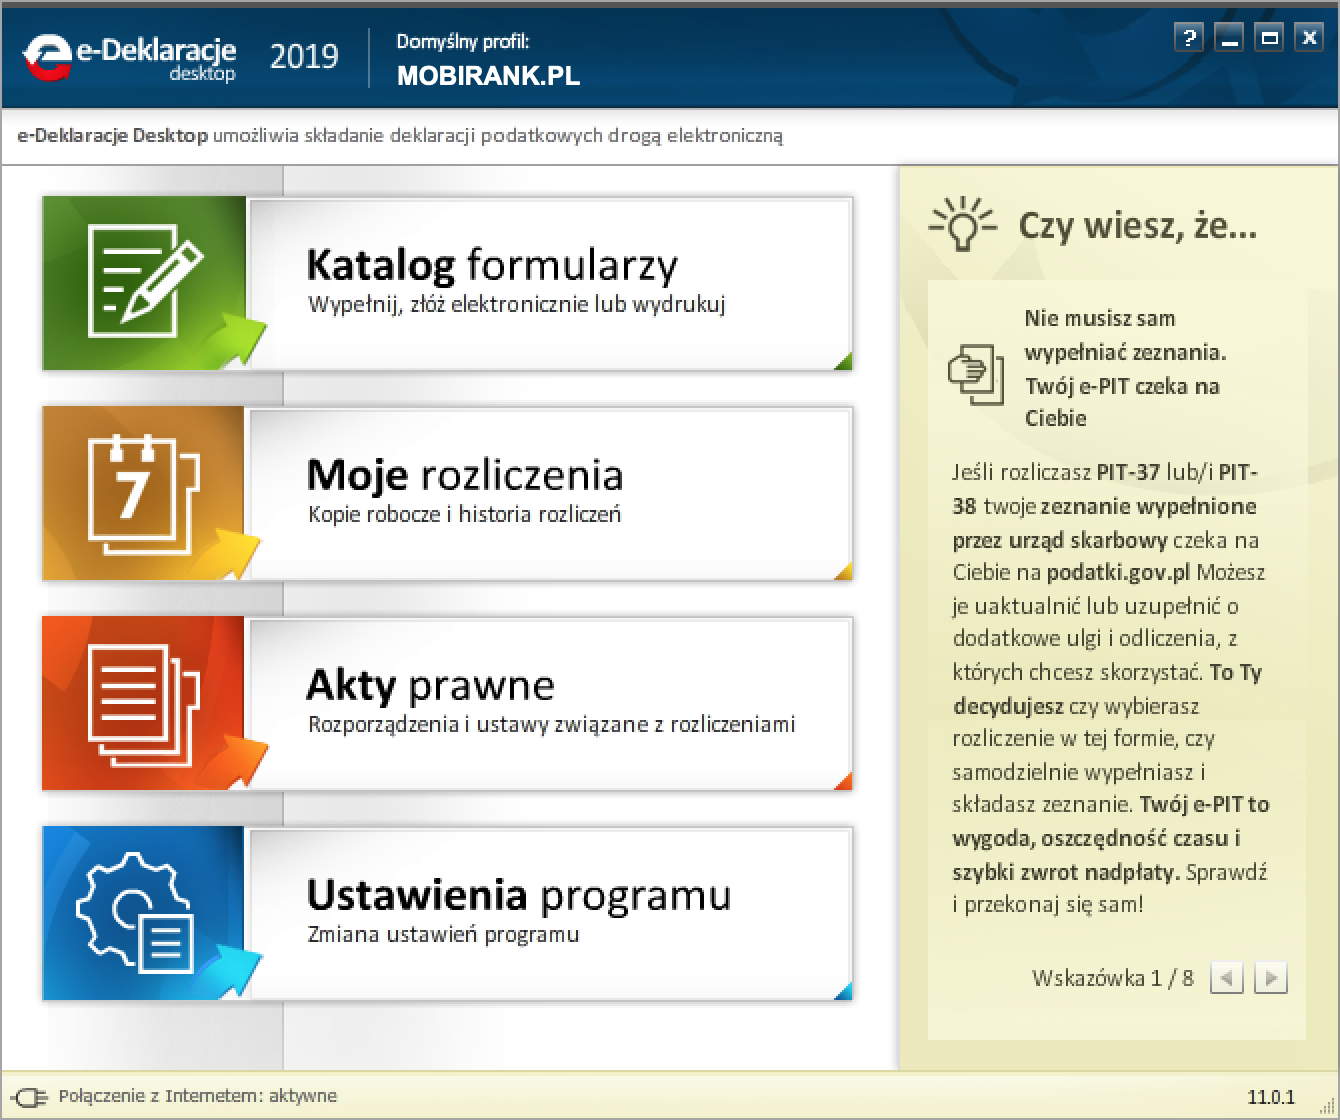 Zrzut ekranu z aplikacji e-Deklaracje 2019 (wersja 11.0.1)